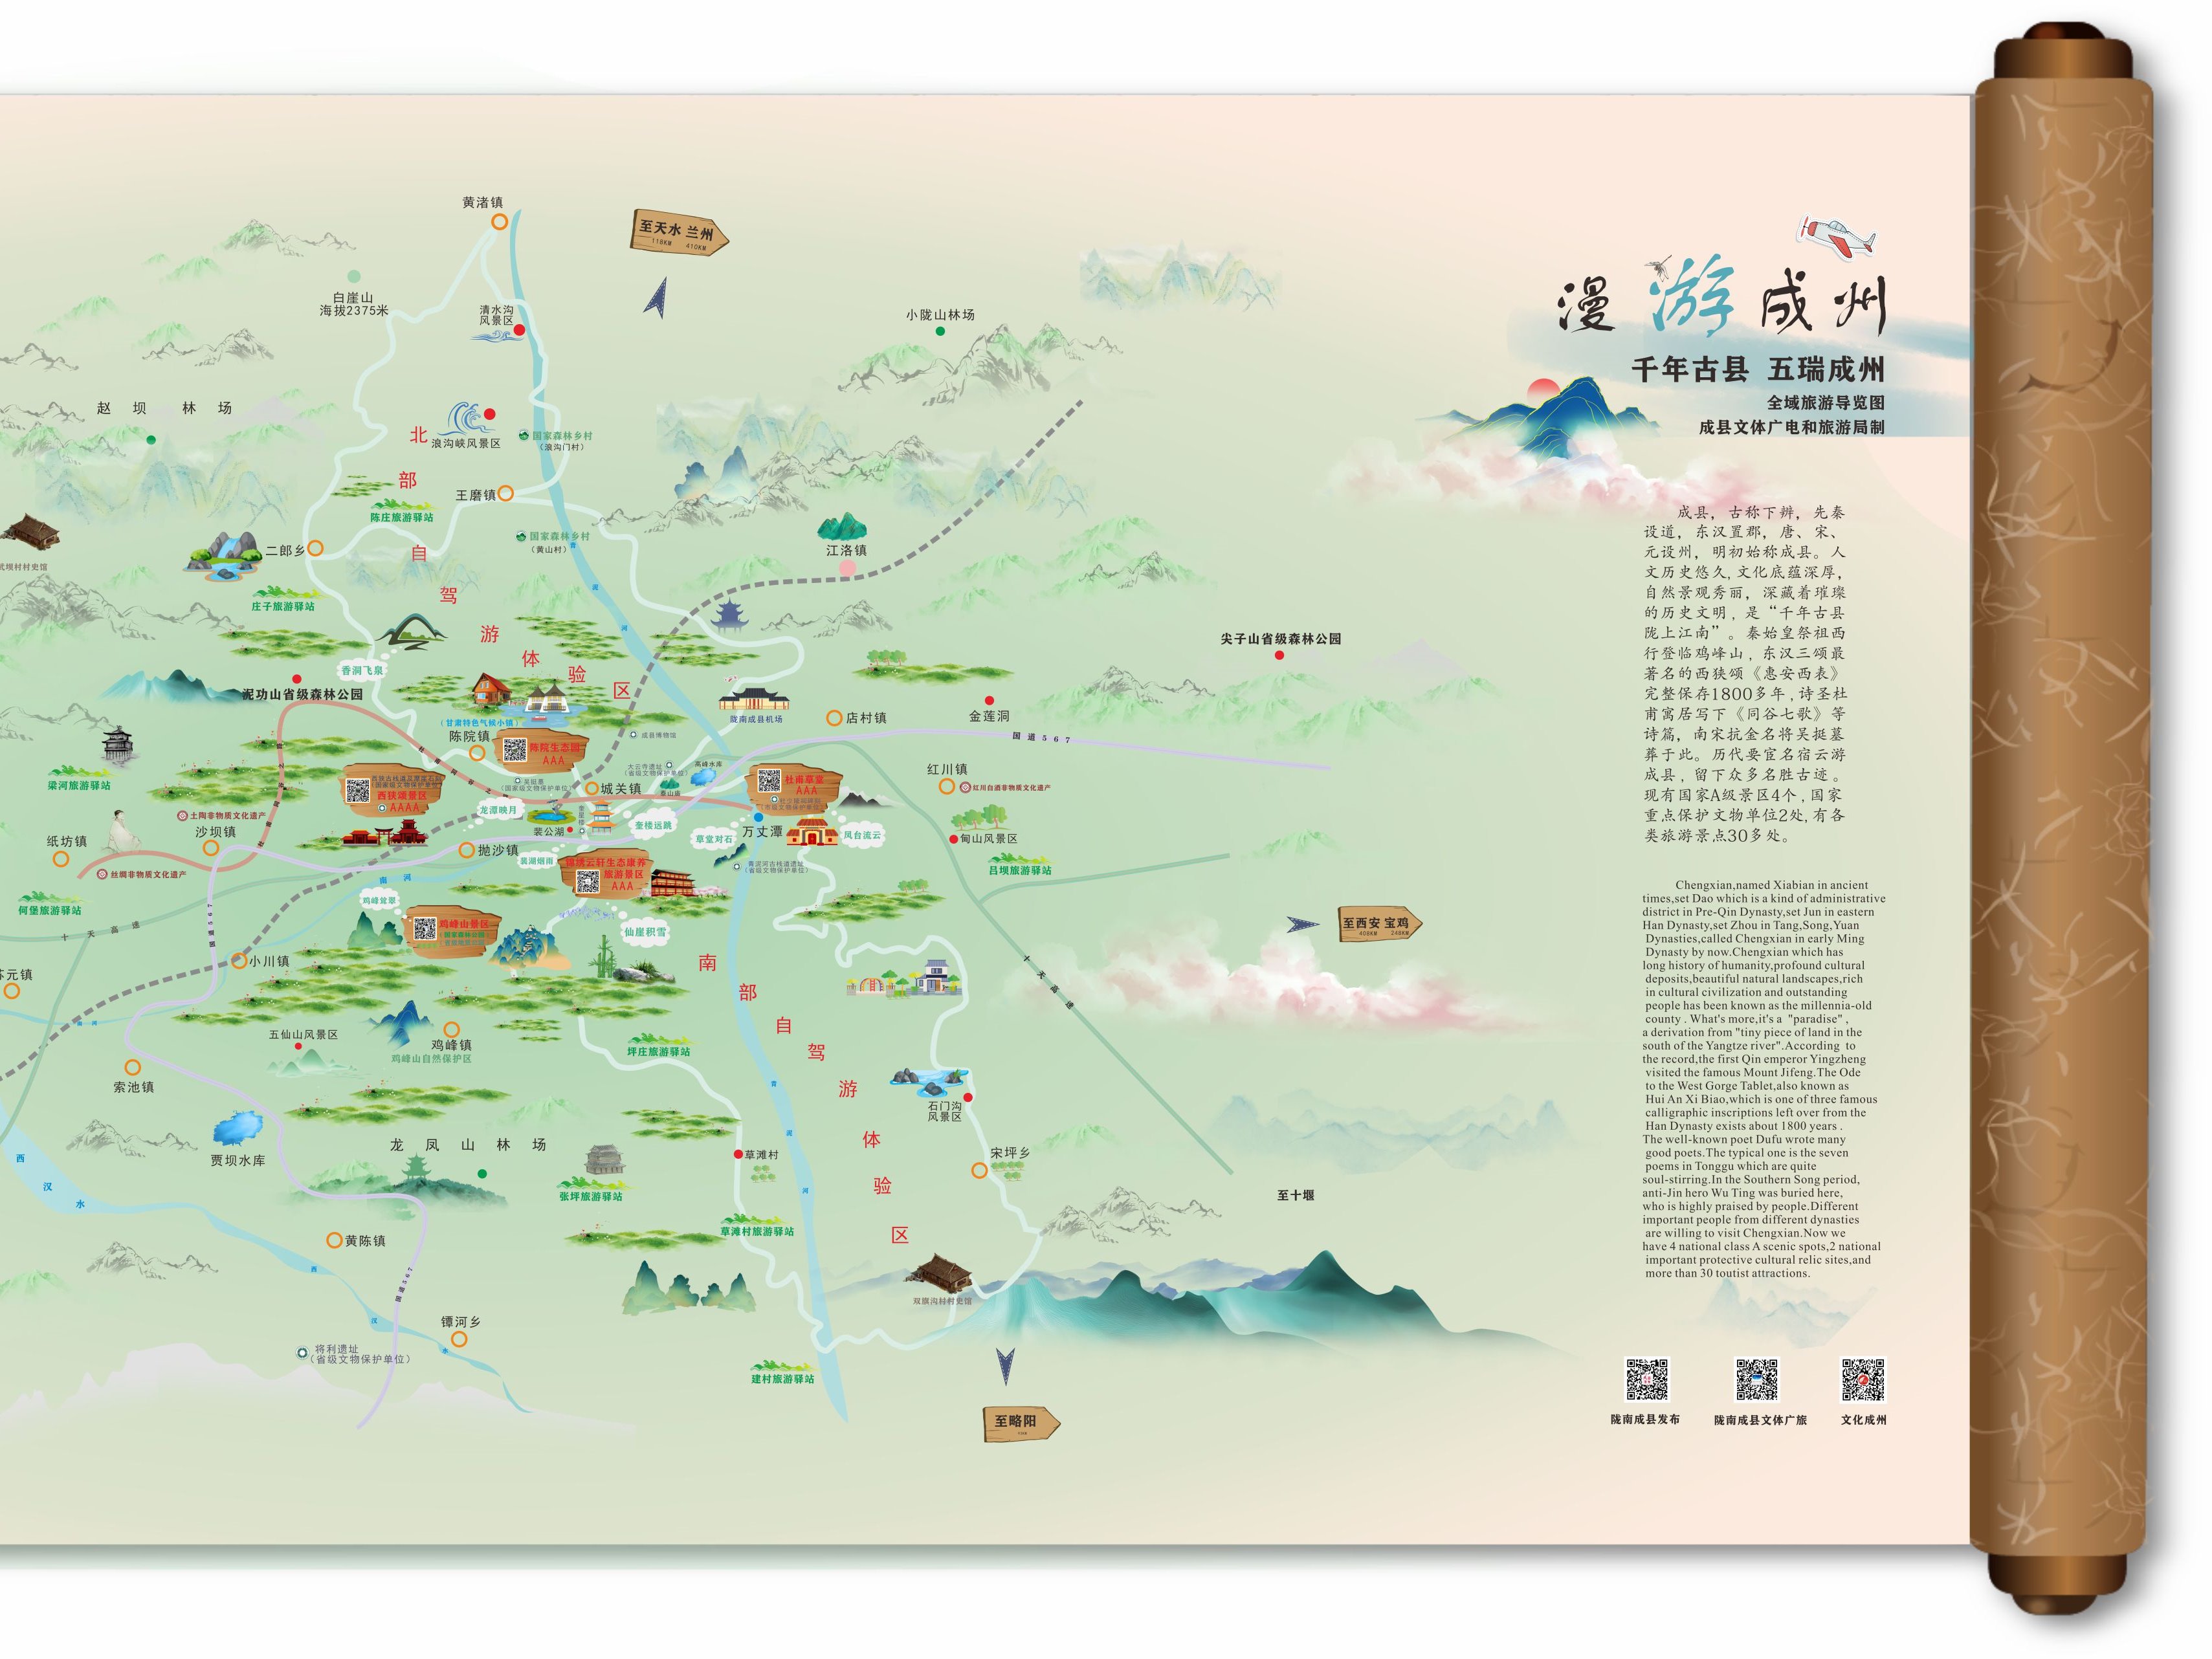 西和地图,成县地图|西和地图,成县地图全图高清版大图片|旅途风景图片网|www.visacits.com